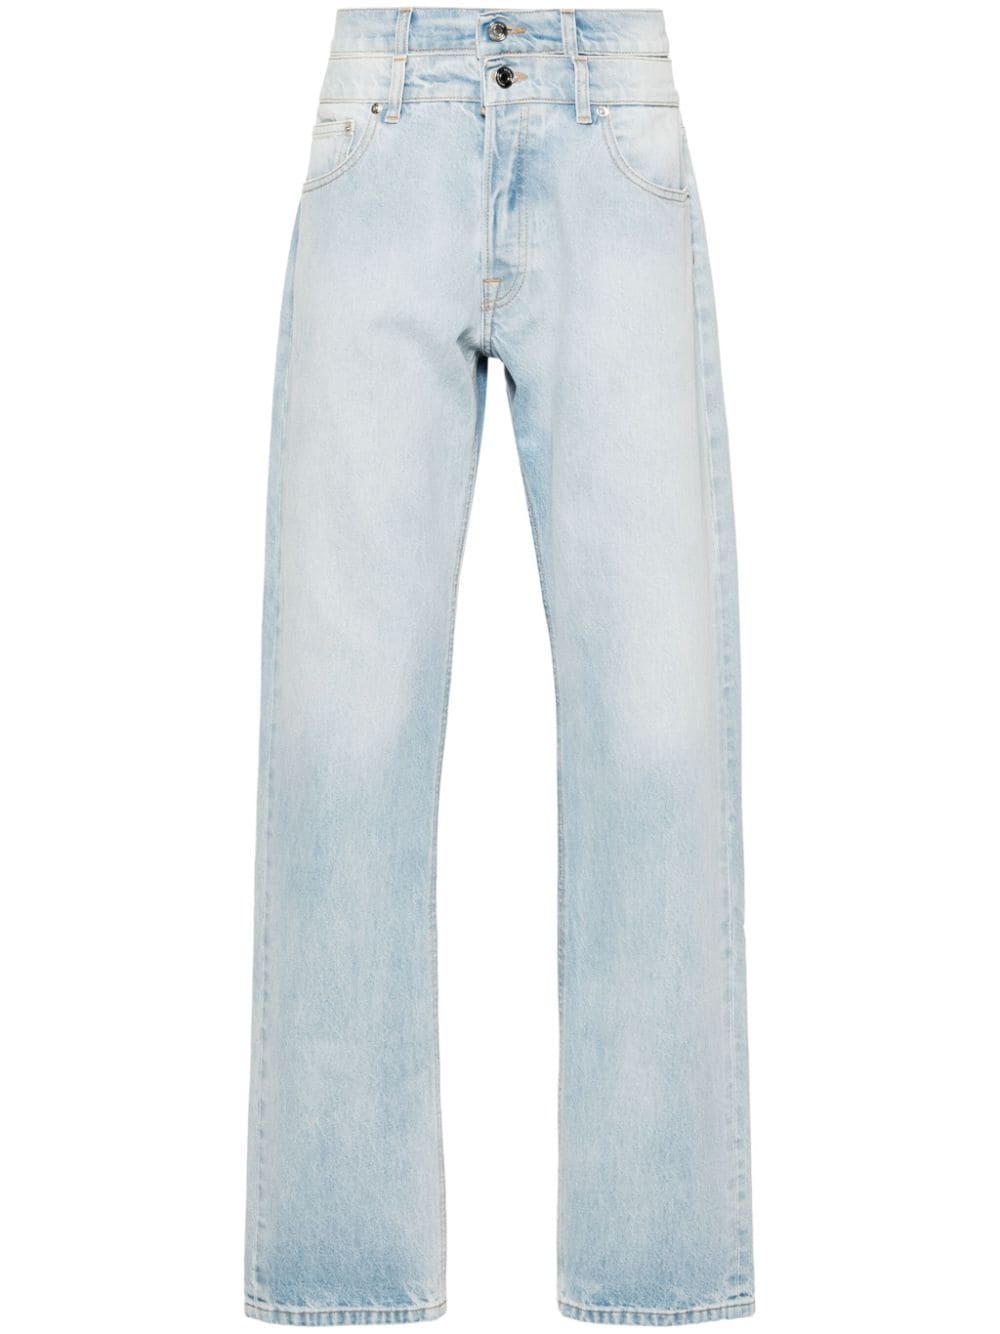 VTMNTS double-waistband straight-leg jeans - Blau